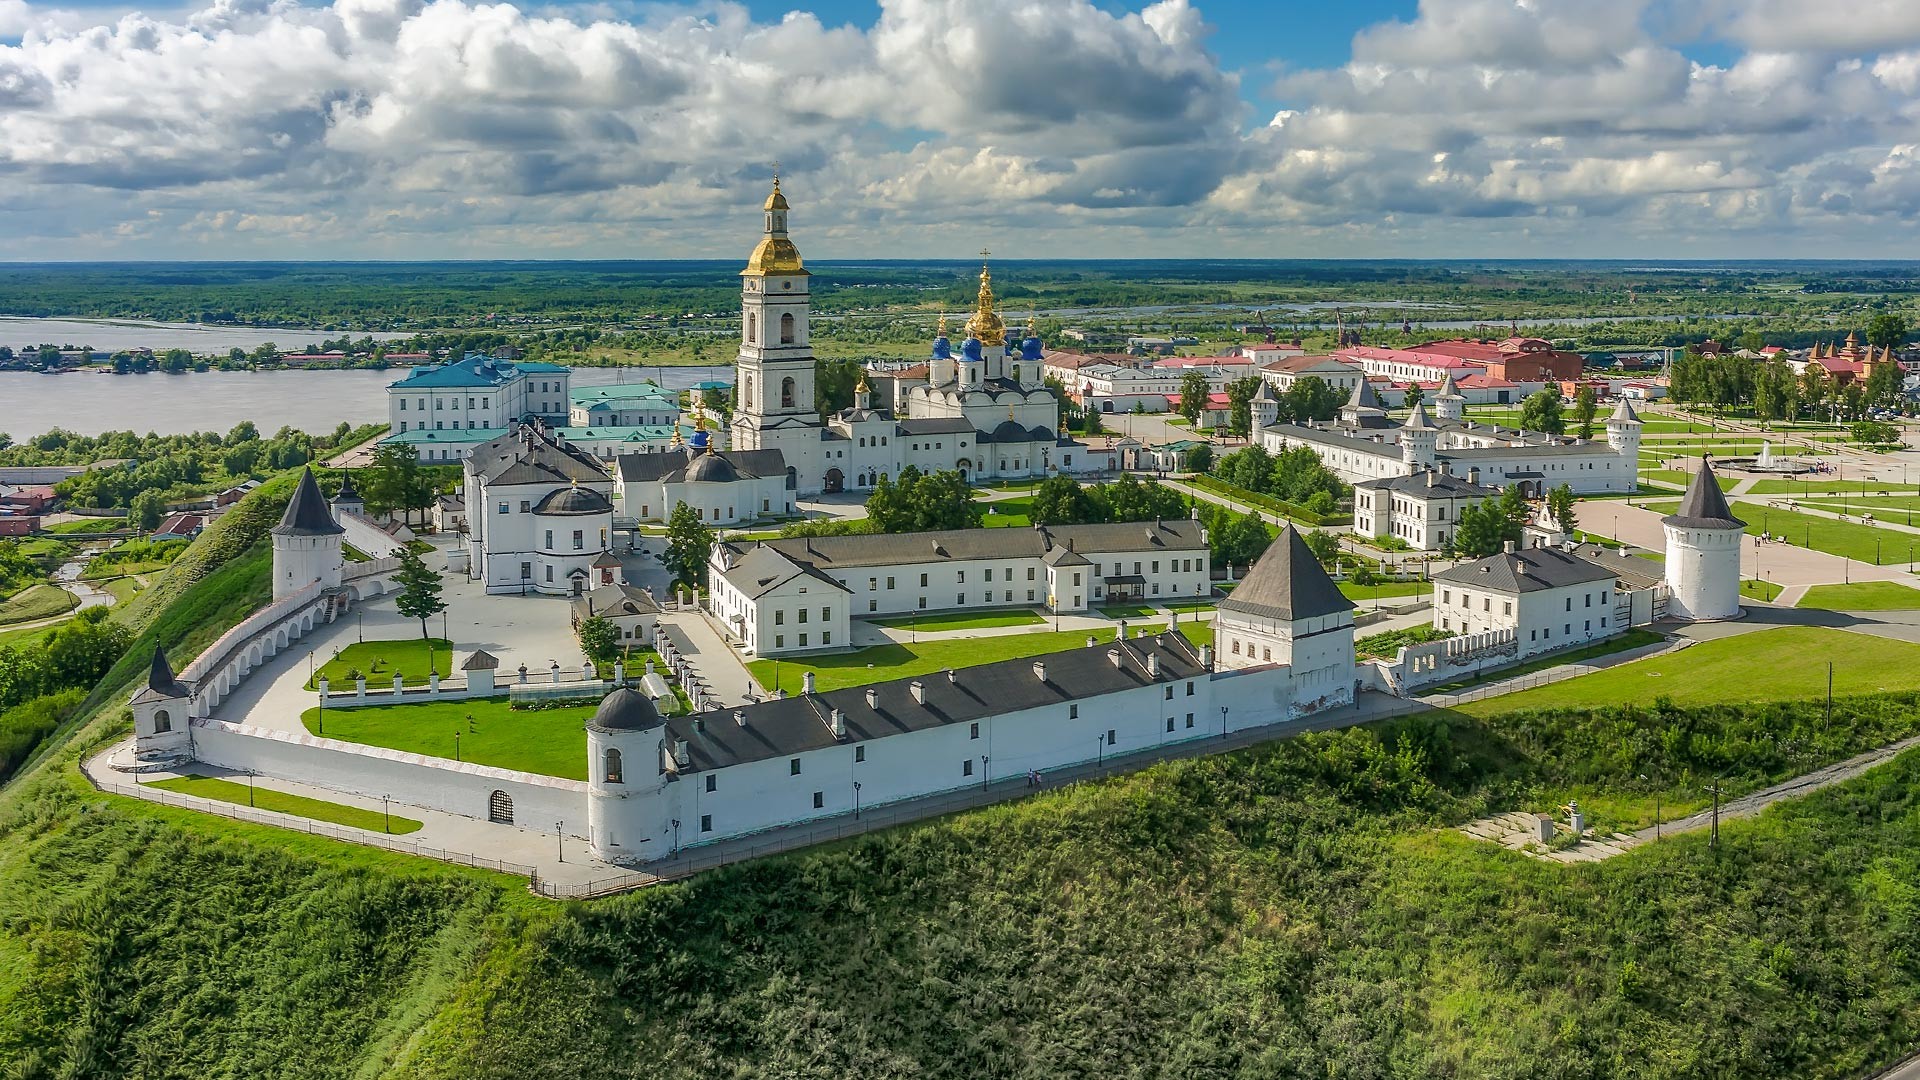 Tobolsk kremlin